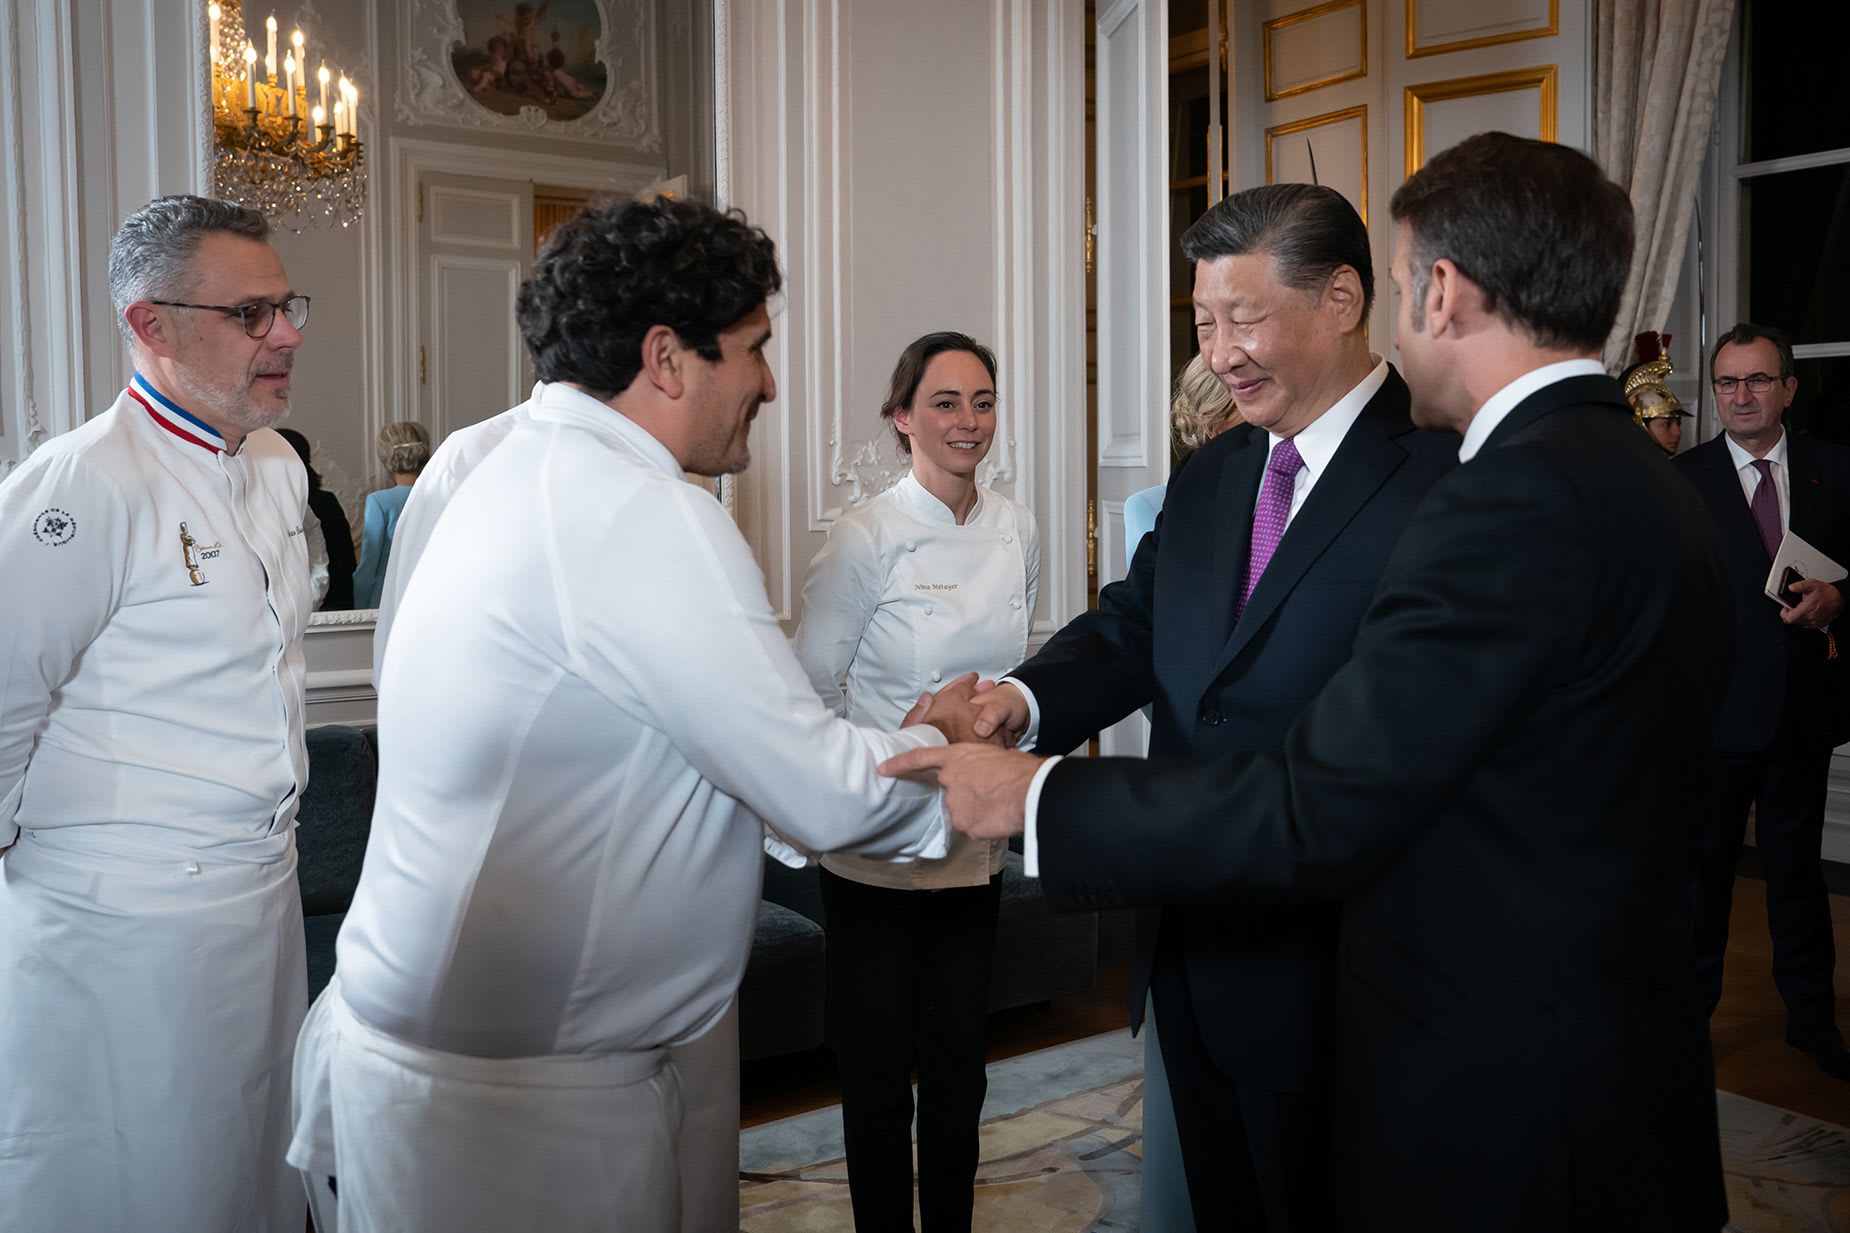 طاهٍ شهير يتحدث عن تجربة الطبخ للزعيم الصيني والرئيس الفرنسي